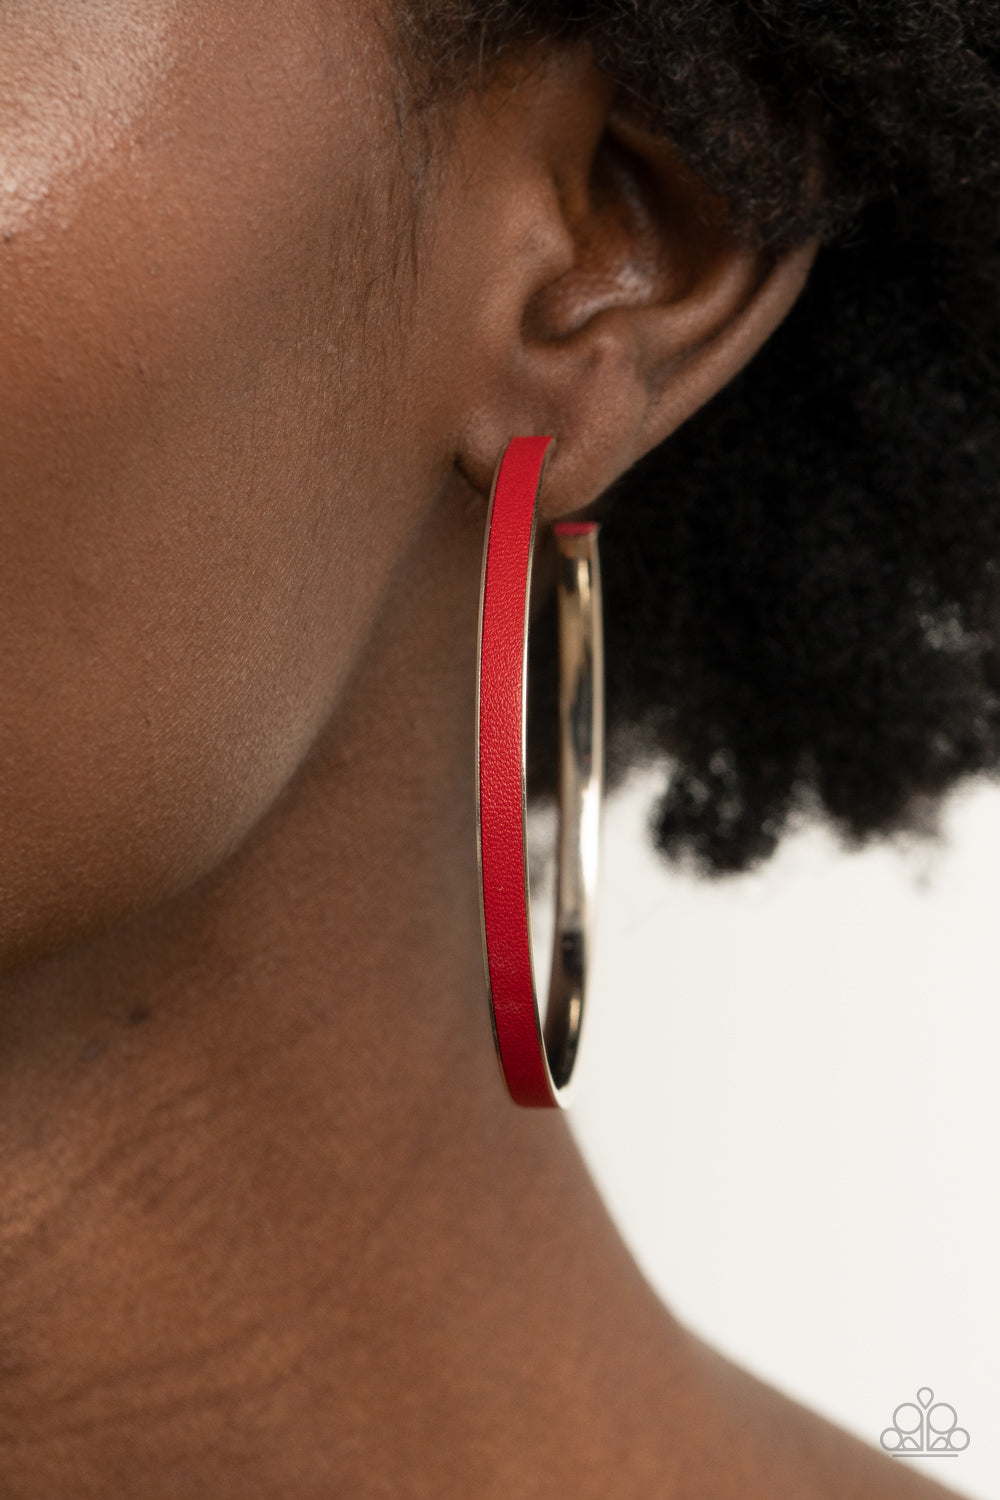 Fearless Flavor - Red Leather Hoop Earrings - Princess Glam Shop